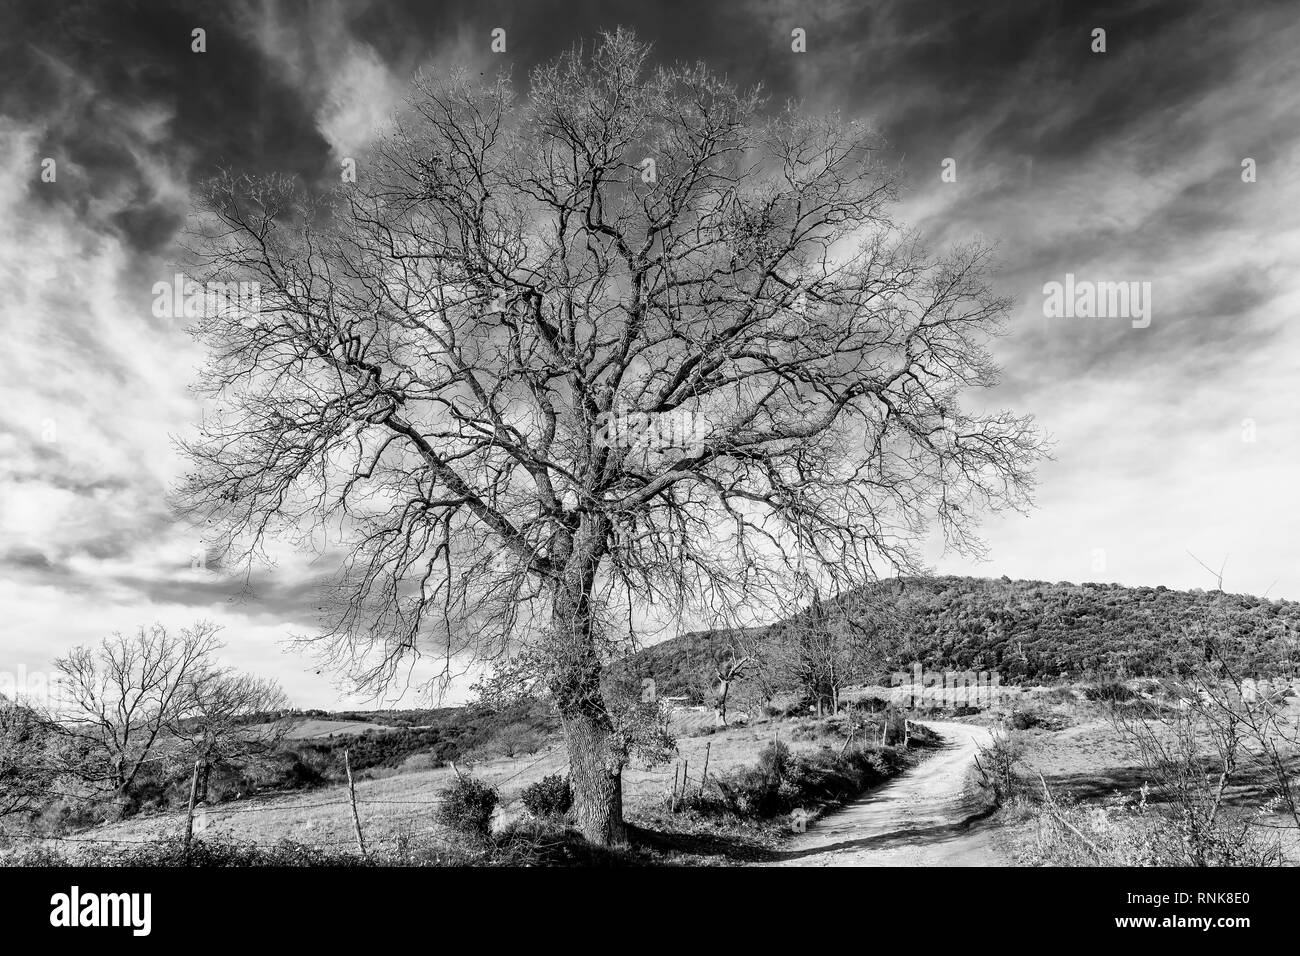 Bel arbre en noir et blanc contre un ciel dramatique dans la campagne de Sienne, Toscane, Italie Banque D'Images